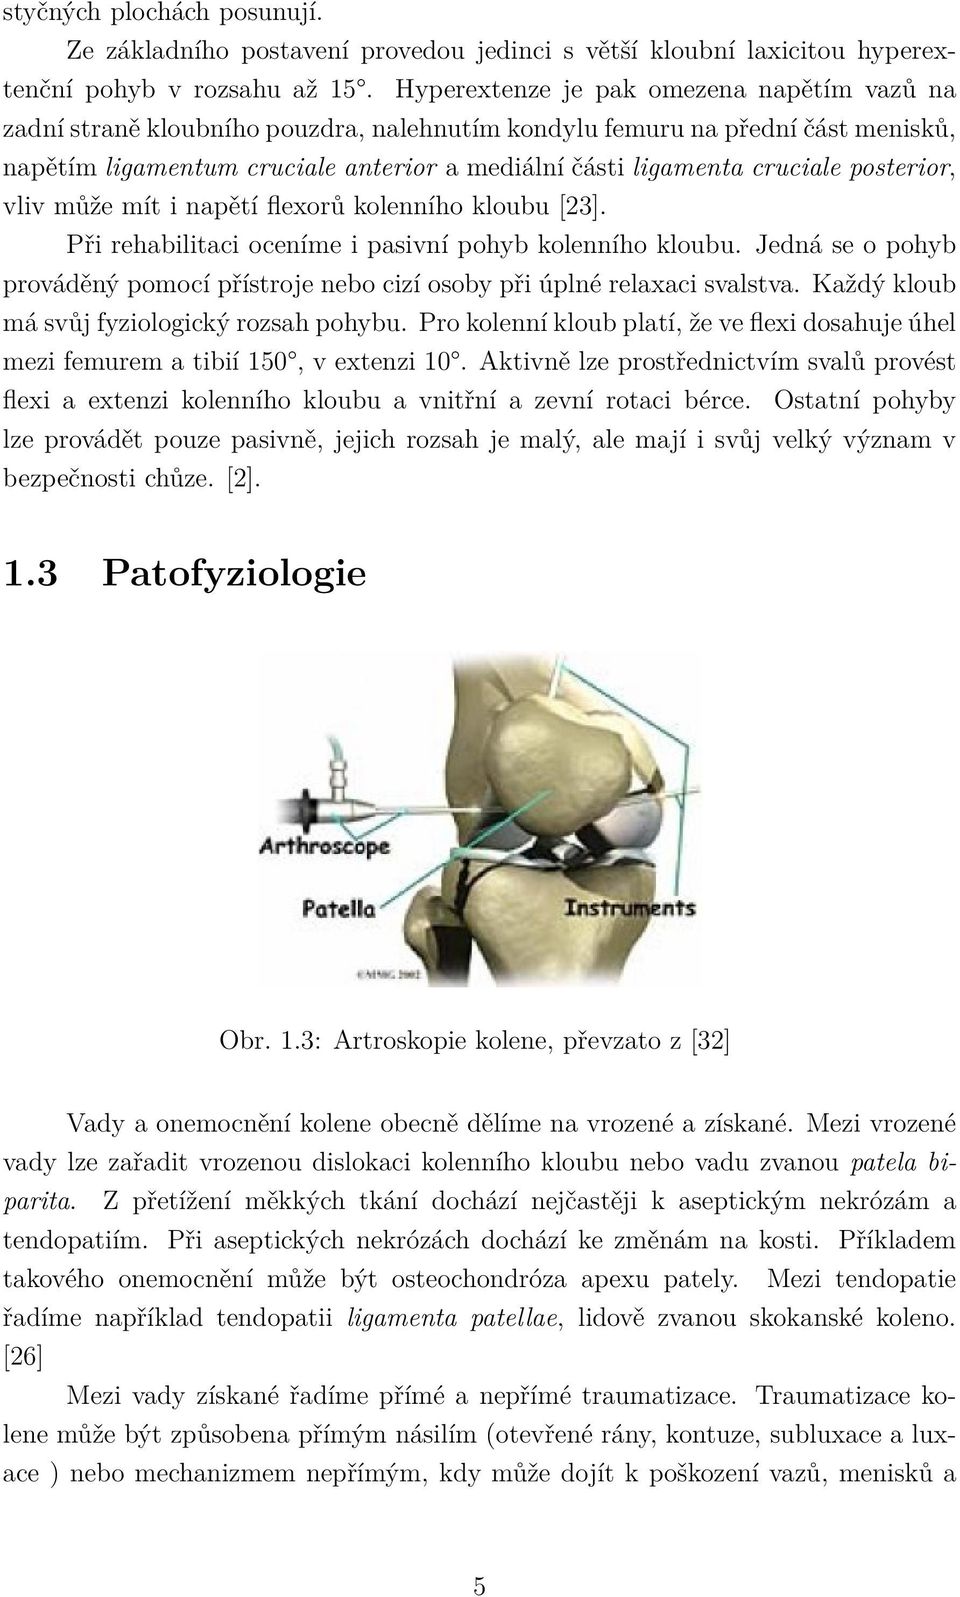 posterior, vliv může mít i napětí flexorů kolenního kloubu [23]. Při rehabilitaci oceníme i pasivní pohyb kolenního kloubu.